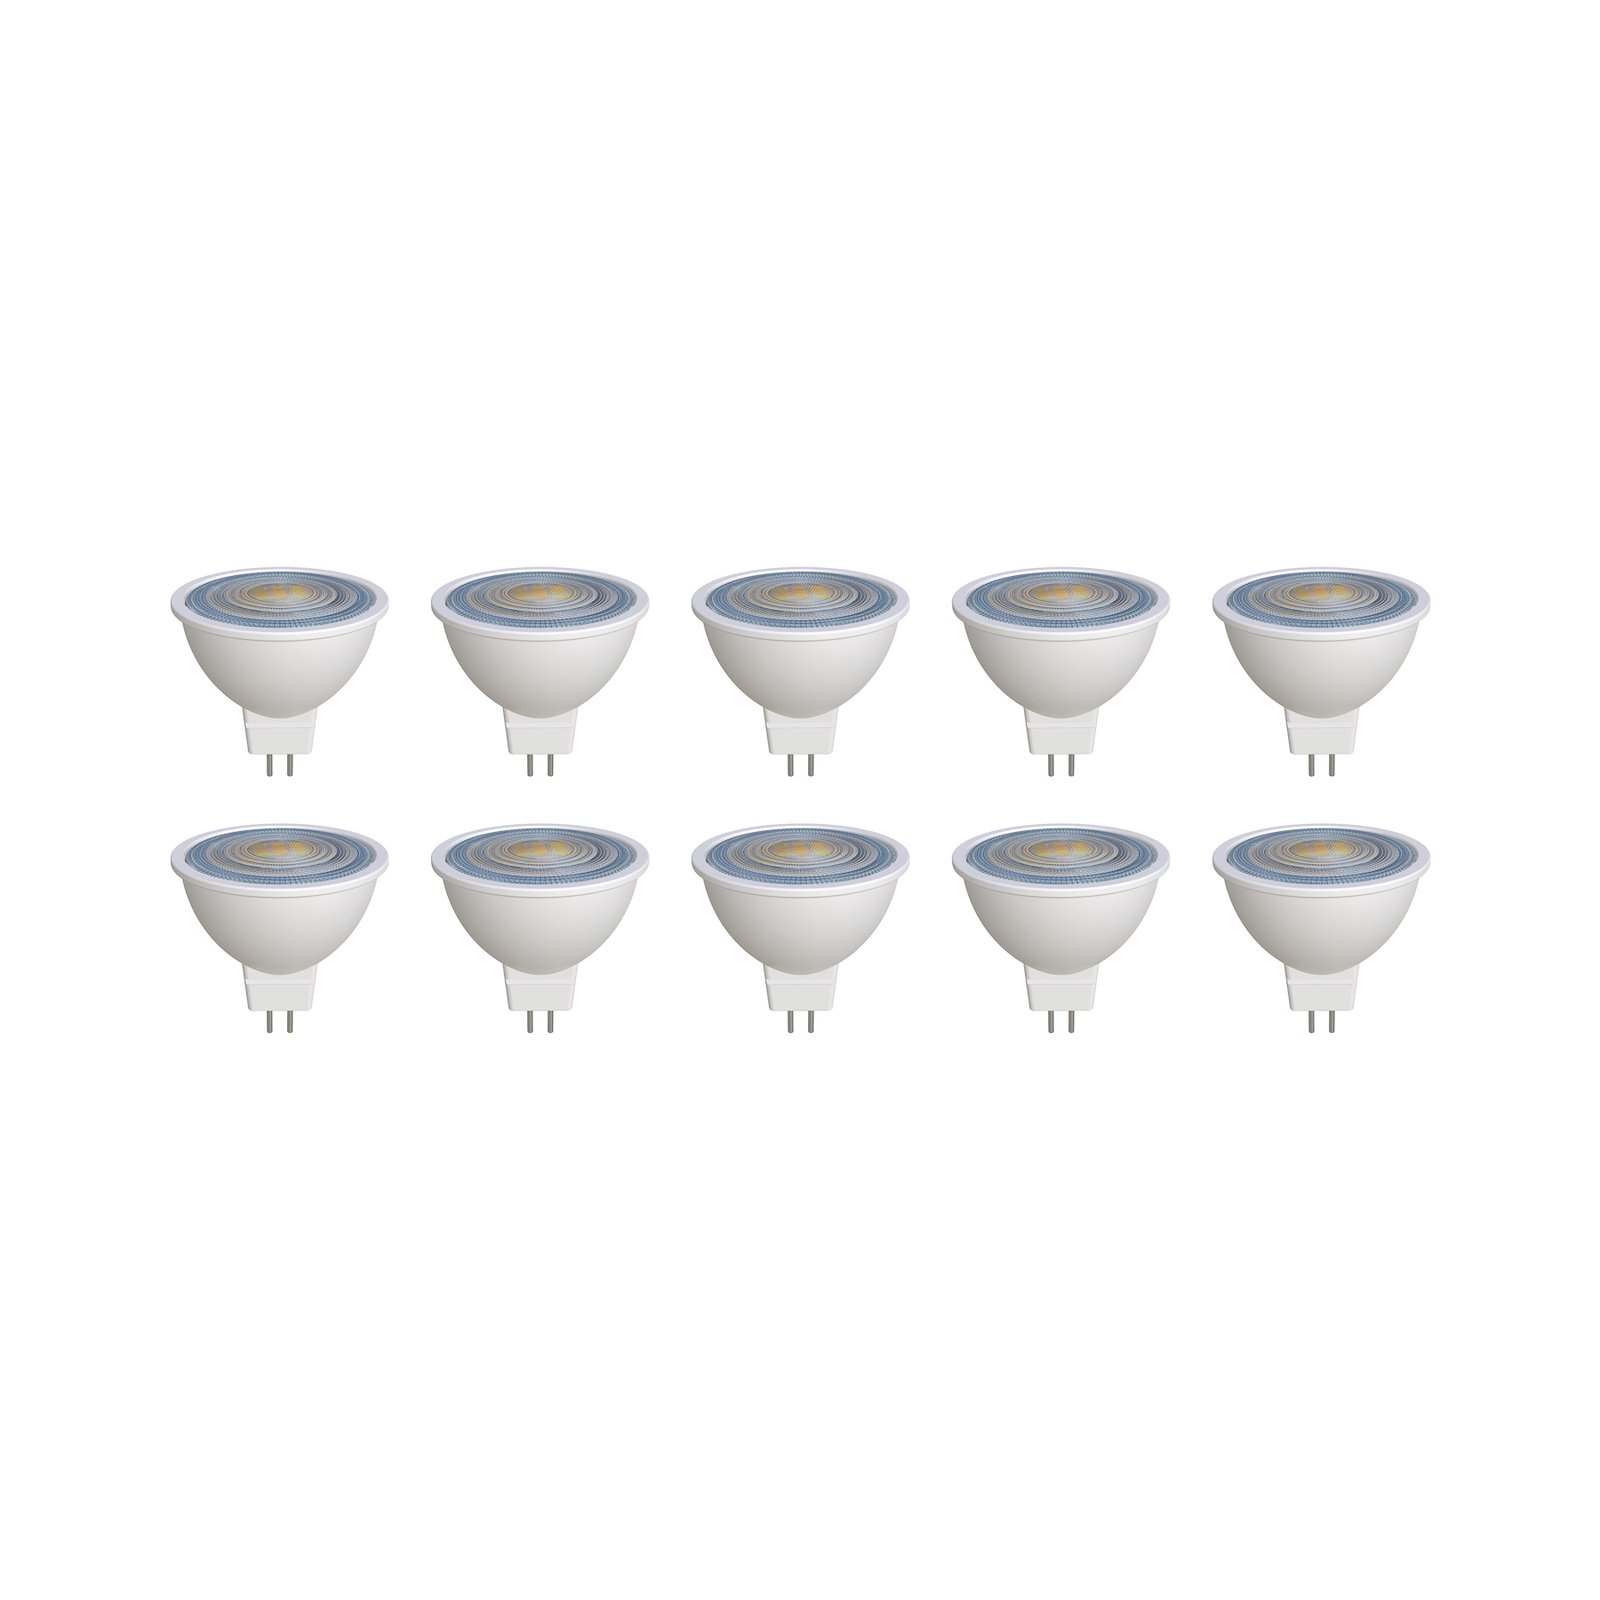 Prios LED reflectorlamp GU5.3 7.5W 621lm 36° wit 840 set van 10